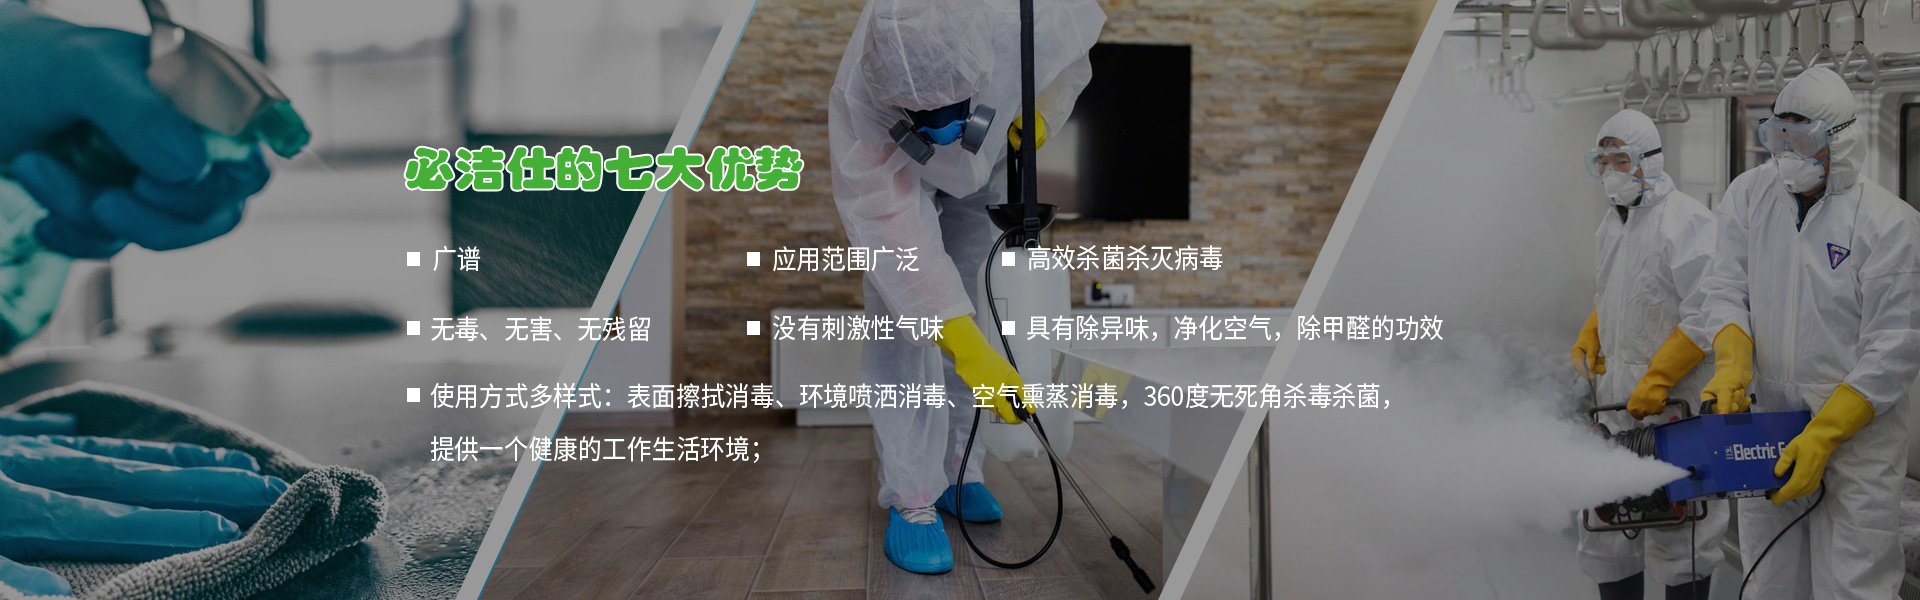 北京消毒剂、空气消毒剂、二氧化氯消毒剂、冷链消毒剂、消毒剂、环境消毒液ban3